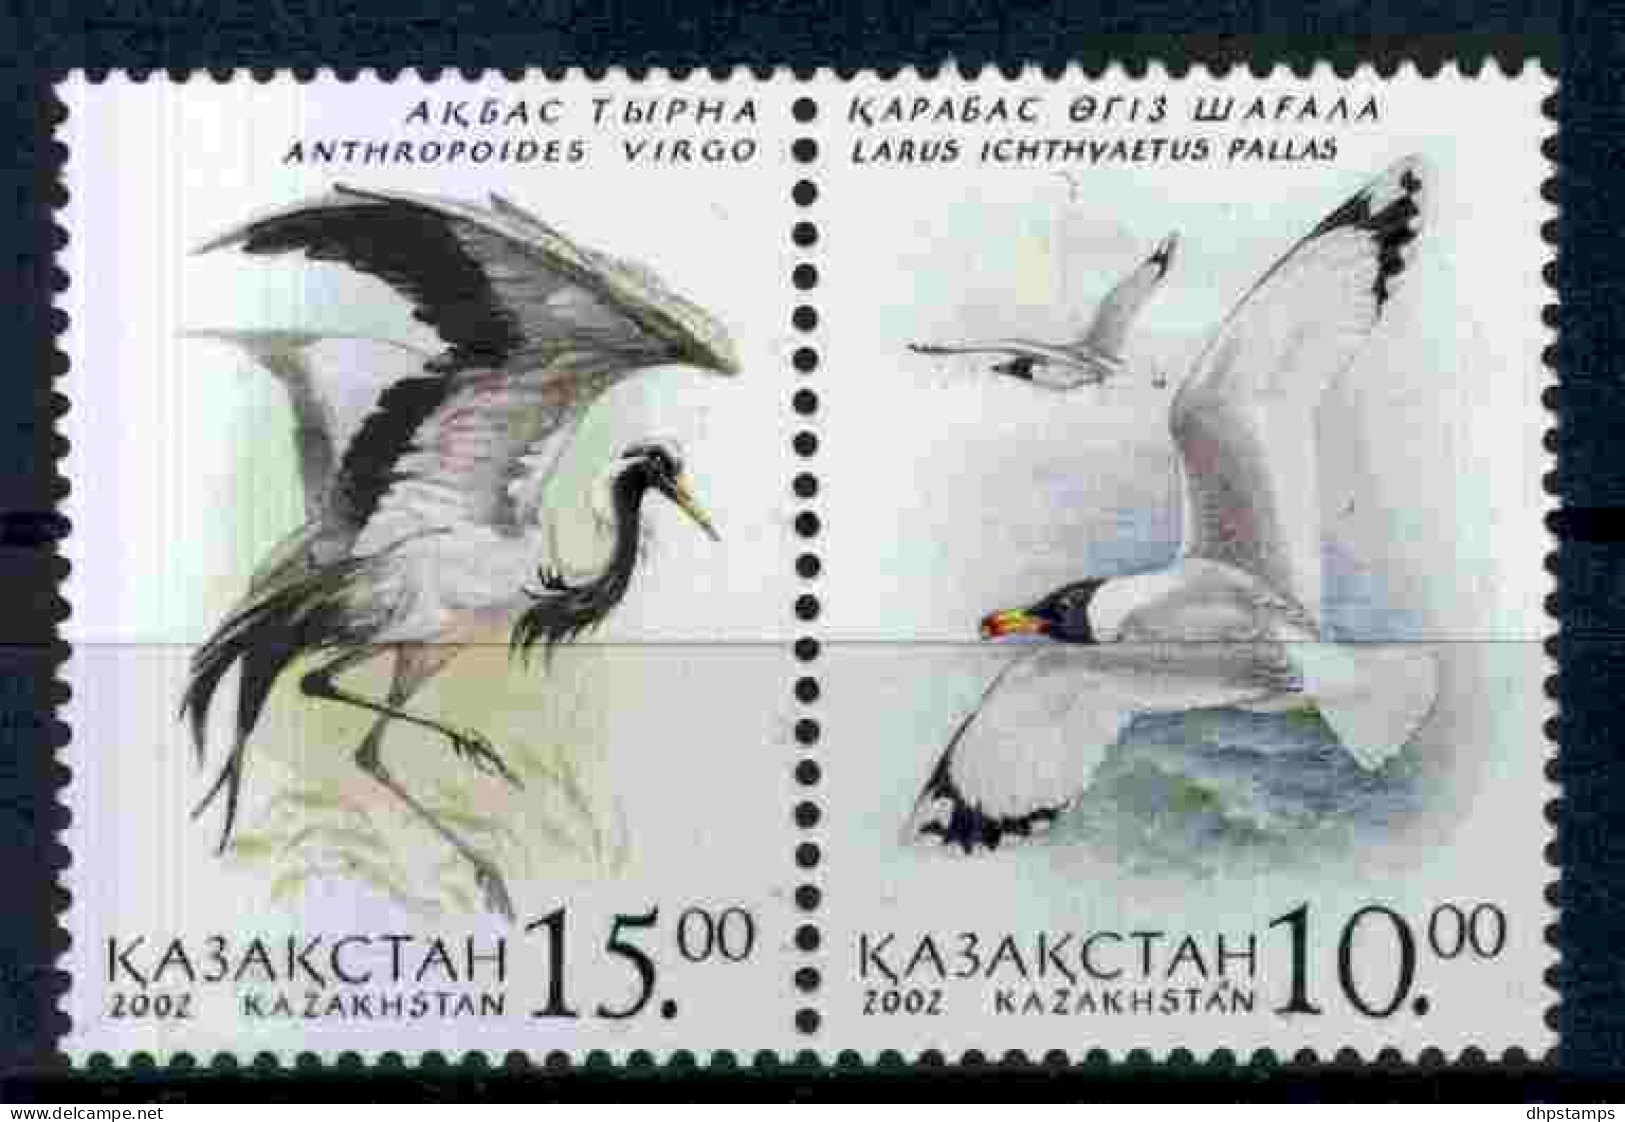 Kazakstan 2002 Birds Pair Y.T. 330/331 ** - Kazajstán